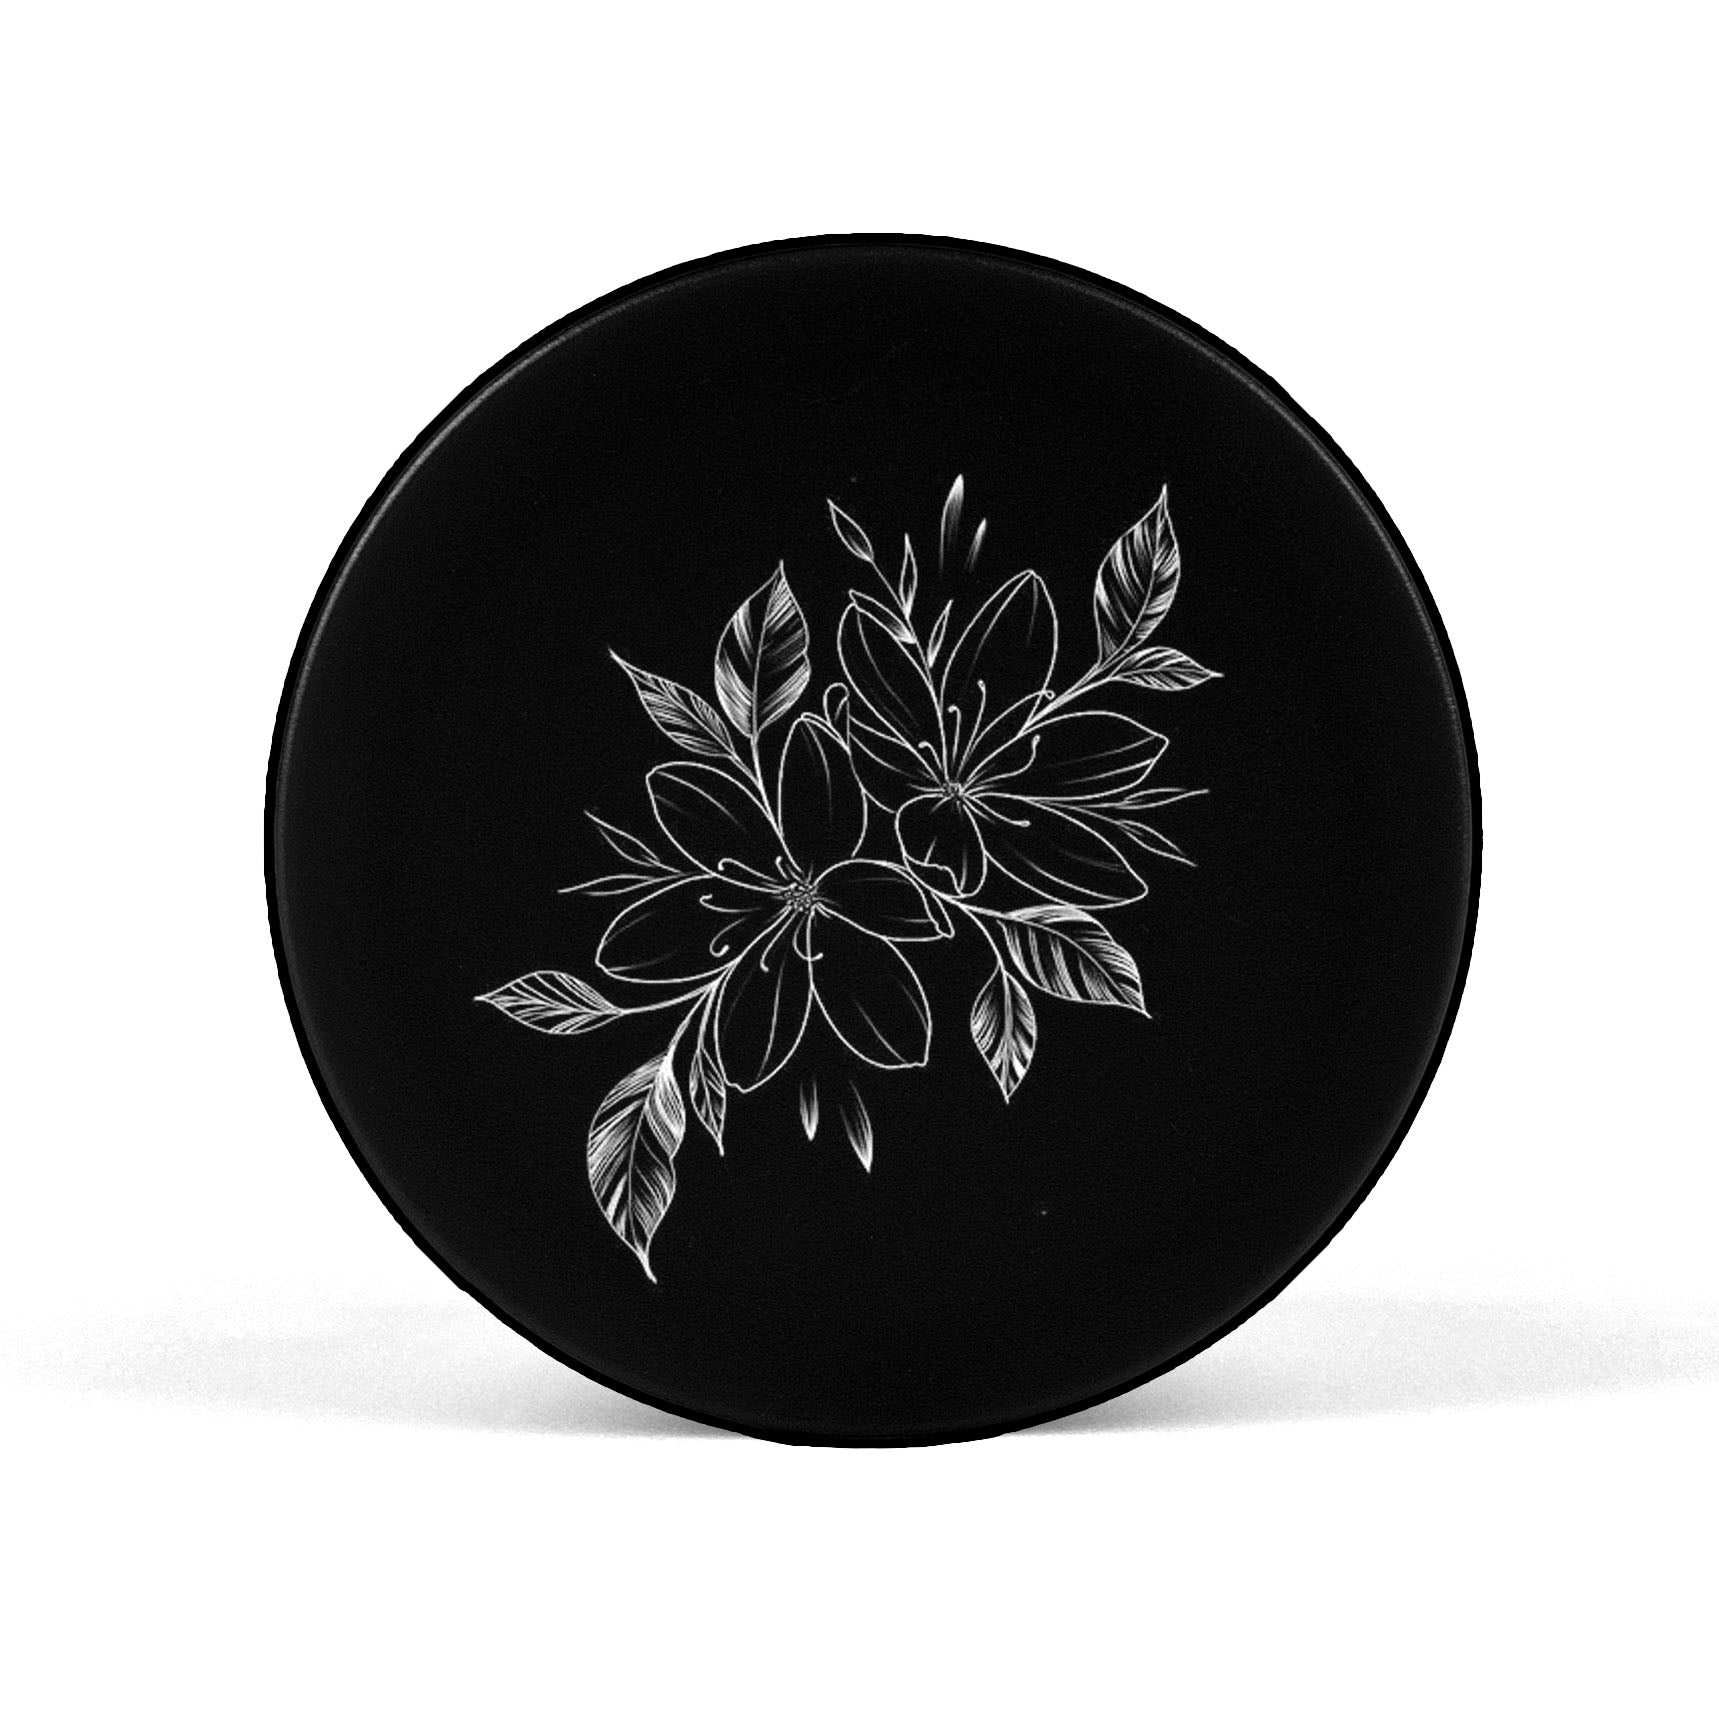 Black & White Floral Mobile Phone Holder Grip - SCOTTSY